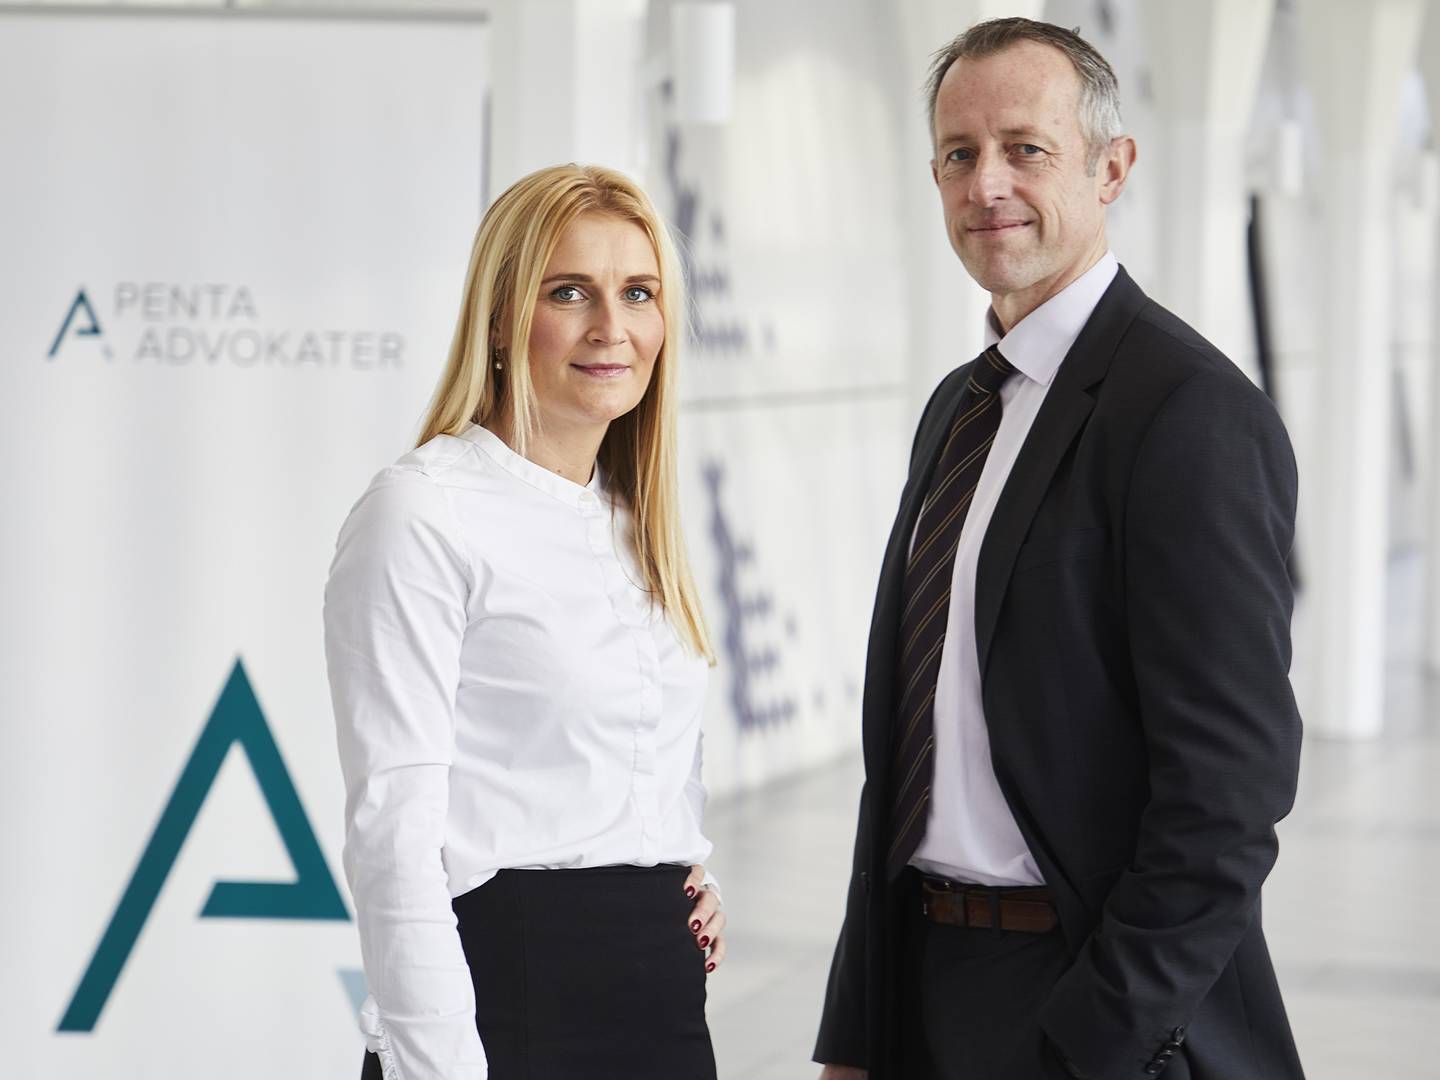 Advokaterne Michael Duelund og Malene Buch Andersen indtræder pr. 1. januar 2022 i partnerkredsen hos Penta Advokater. | Foto: Penta Advokater / PR